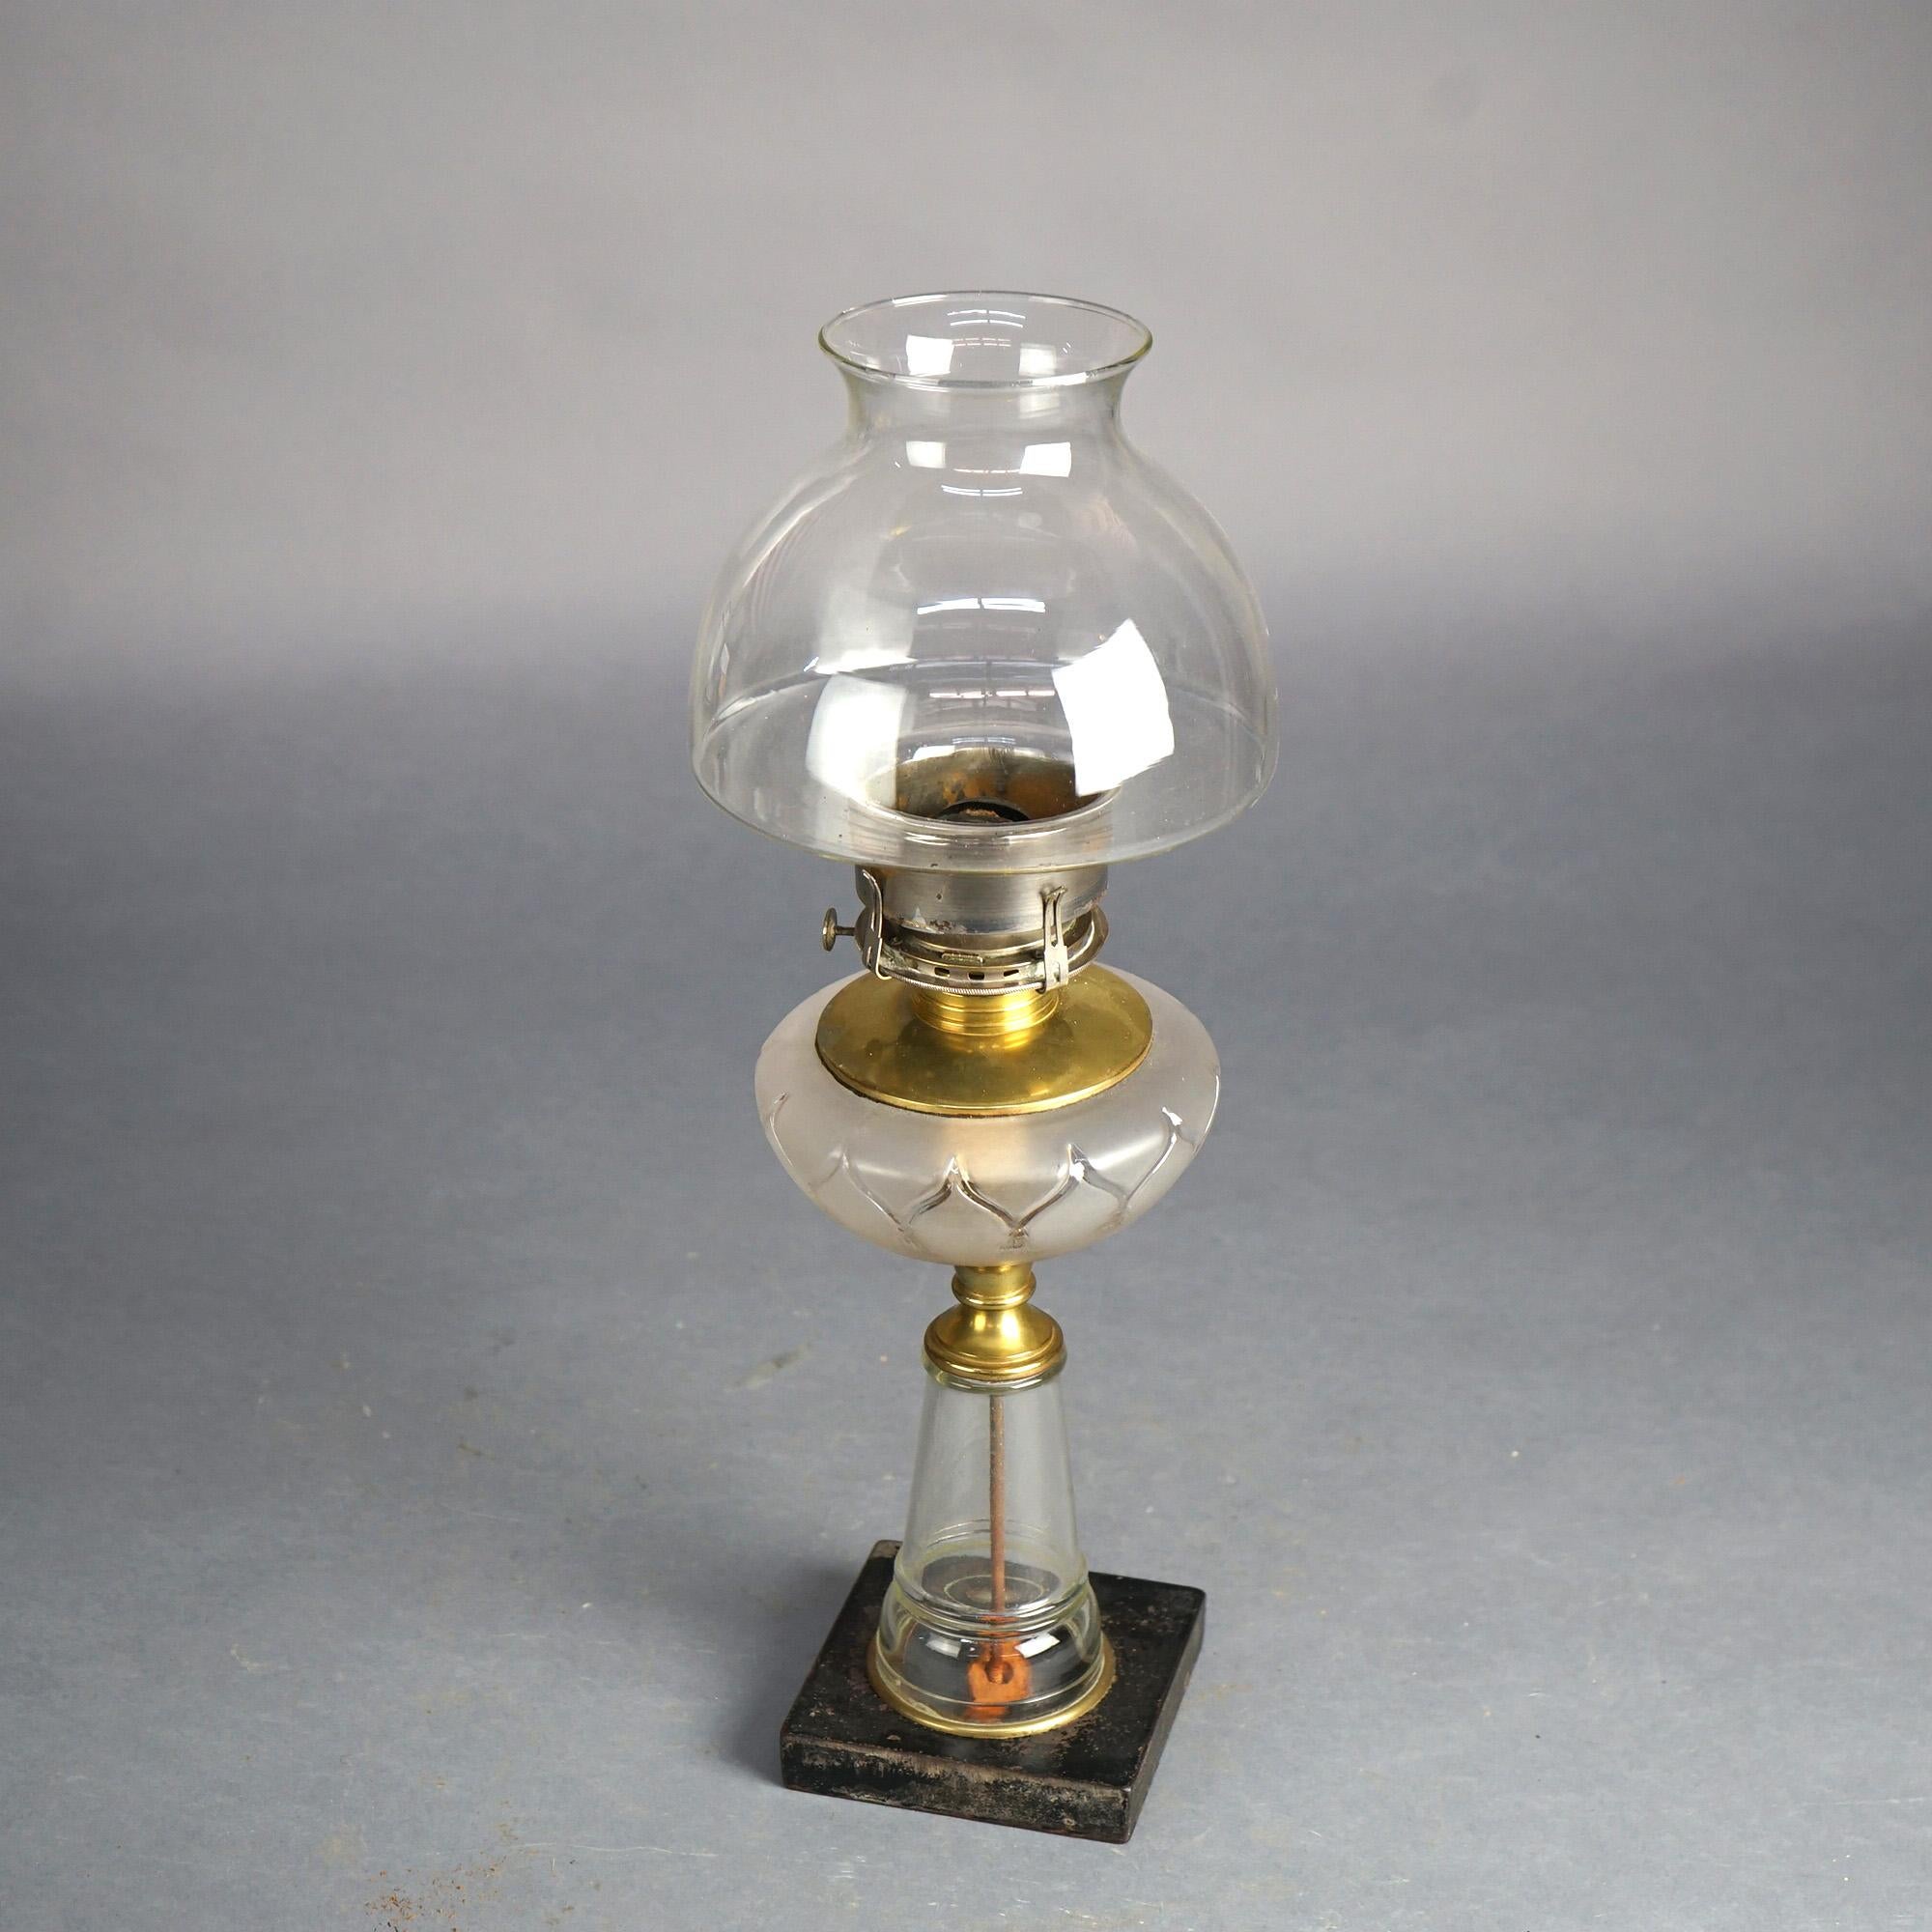 Lampe à huile ancienne avec base en verre et abat-jour C1890

Dimensions : 19,75''H x 6,75''L x 6,75''P